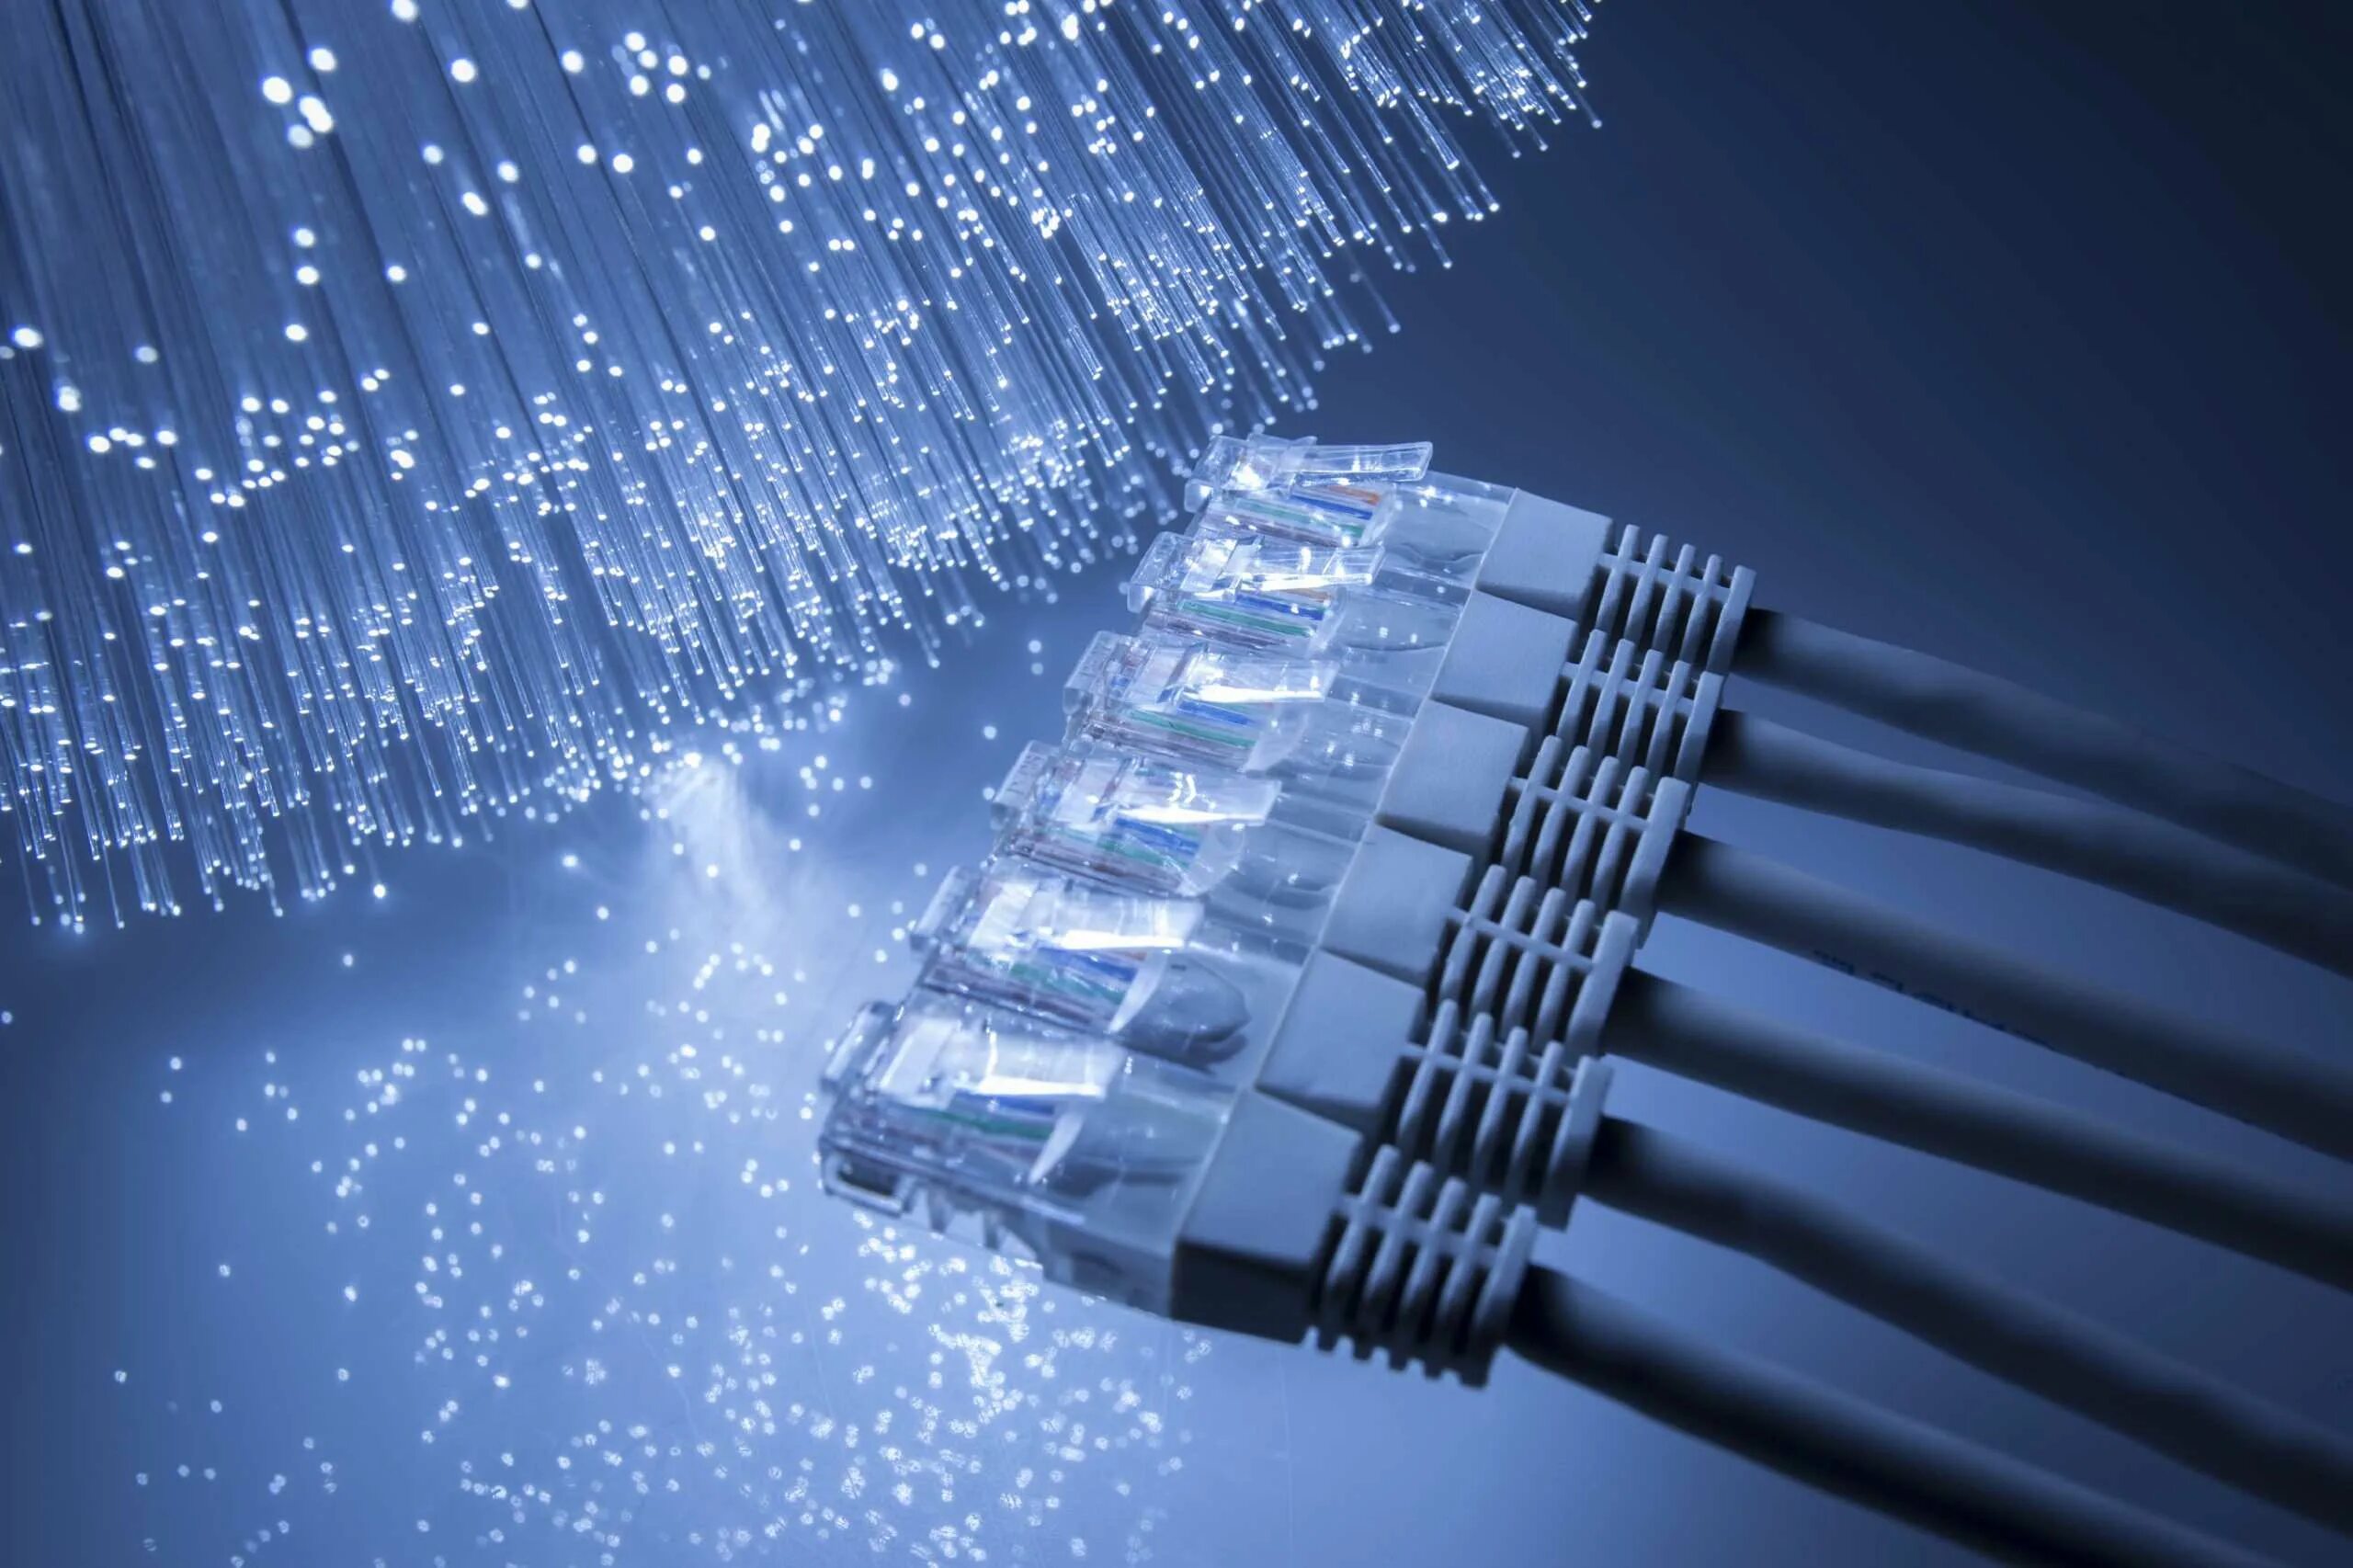 Провод Ethernet ВОЛС. Оптоволокно сетевой кабель. Волоконно-оптические линии связи. Сетевое оборудование компьютерных сетей оптоволокно.